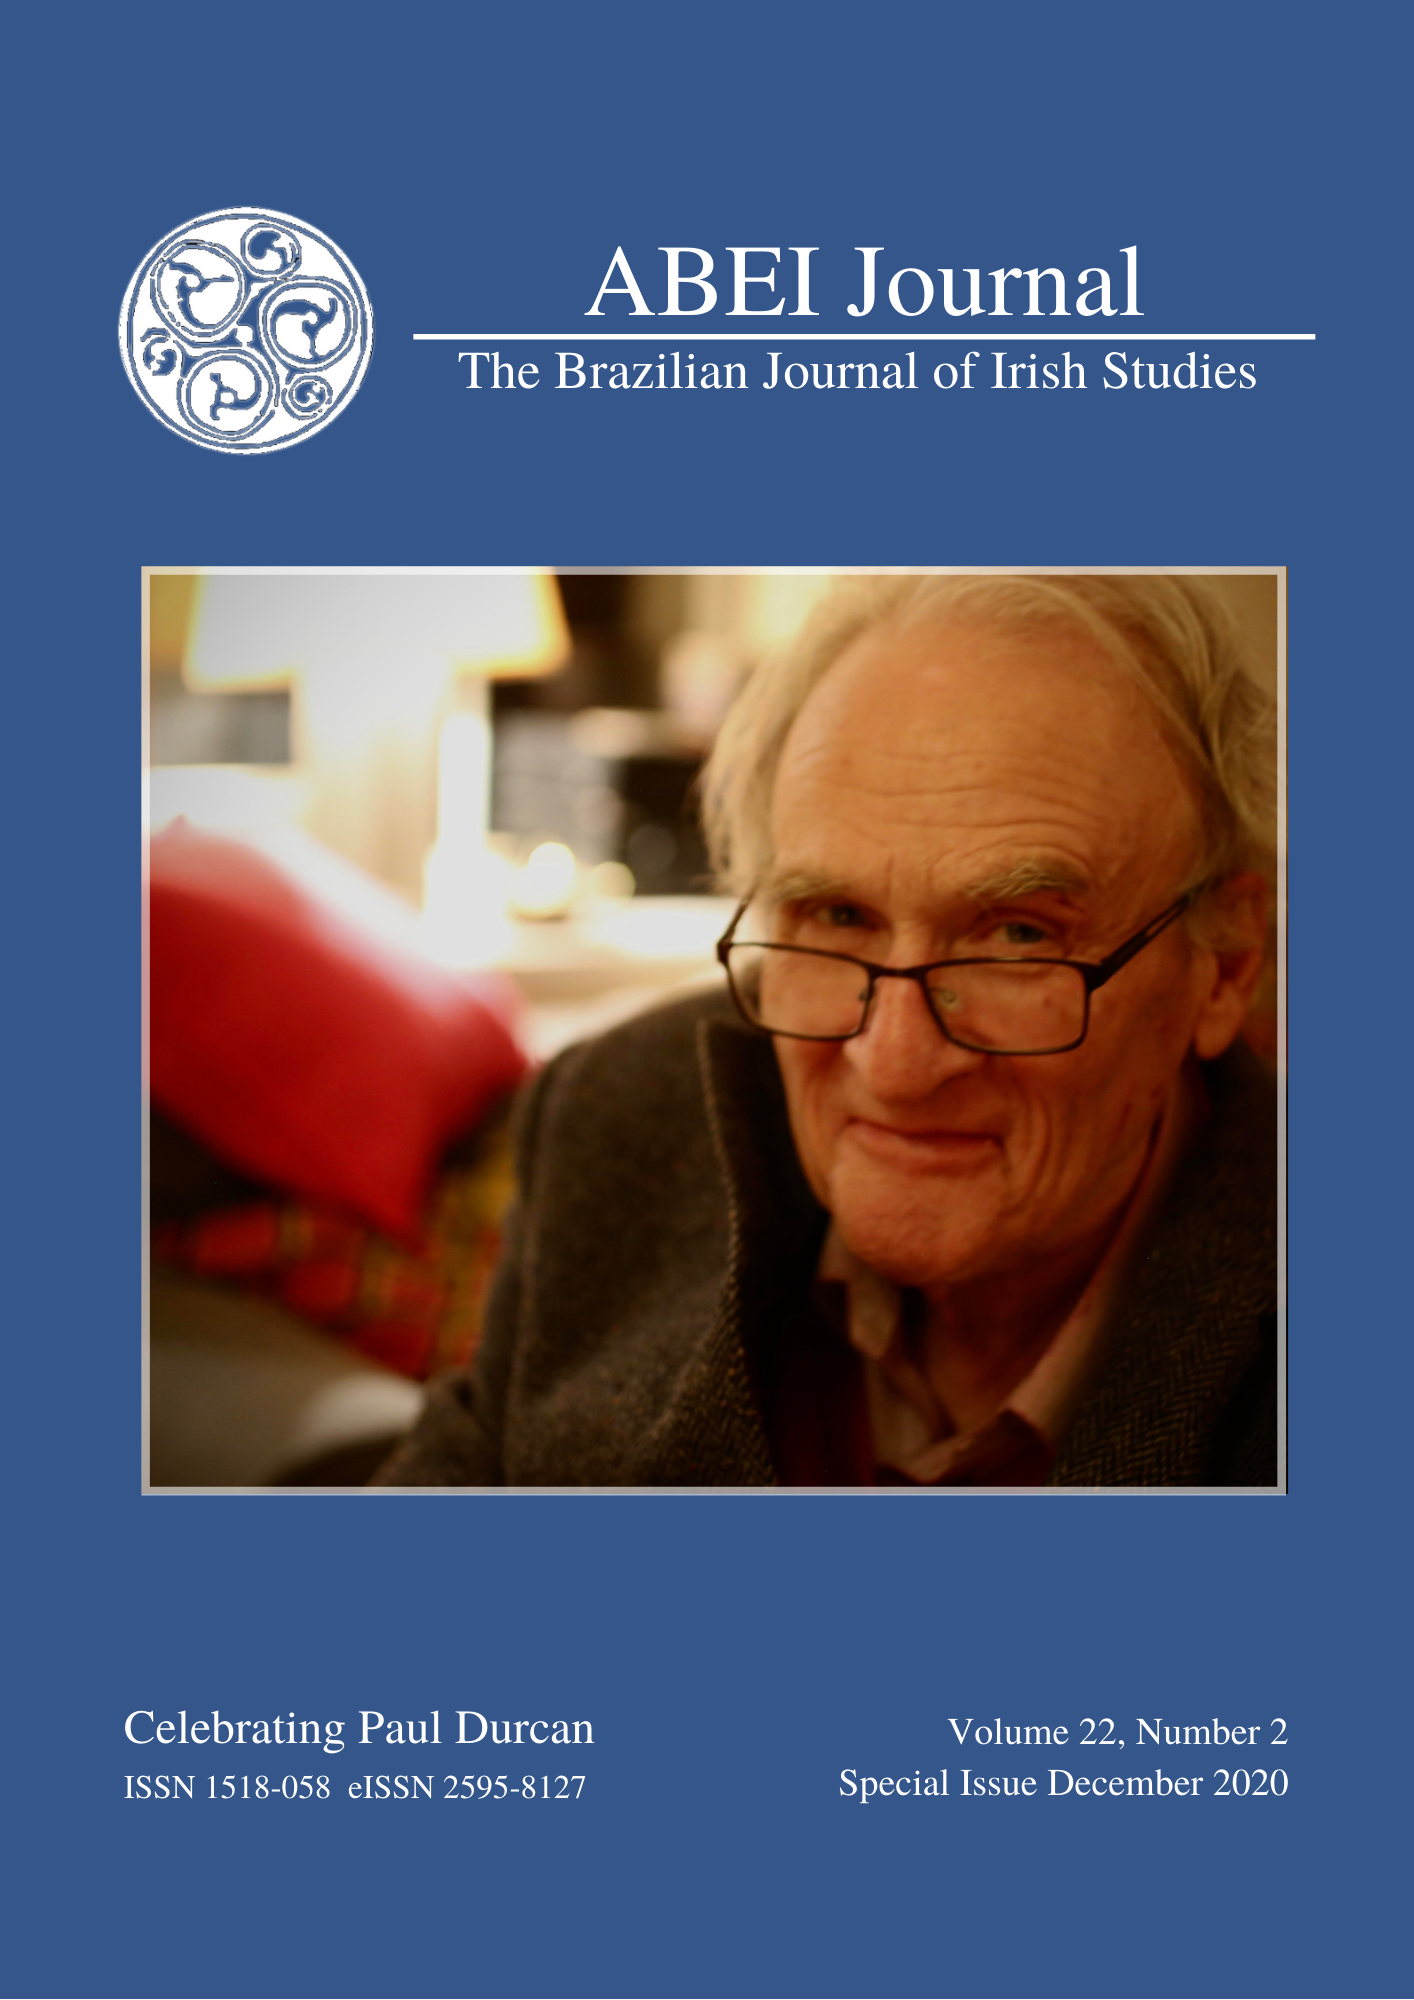 					查看 卷 22 期 2 (2020): ABEI Journal 22.2 —  Celebrating Paul Durcan on his 76th Birthday
				